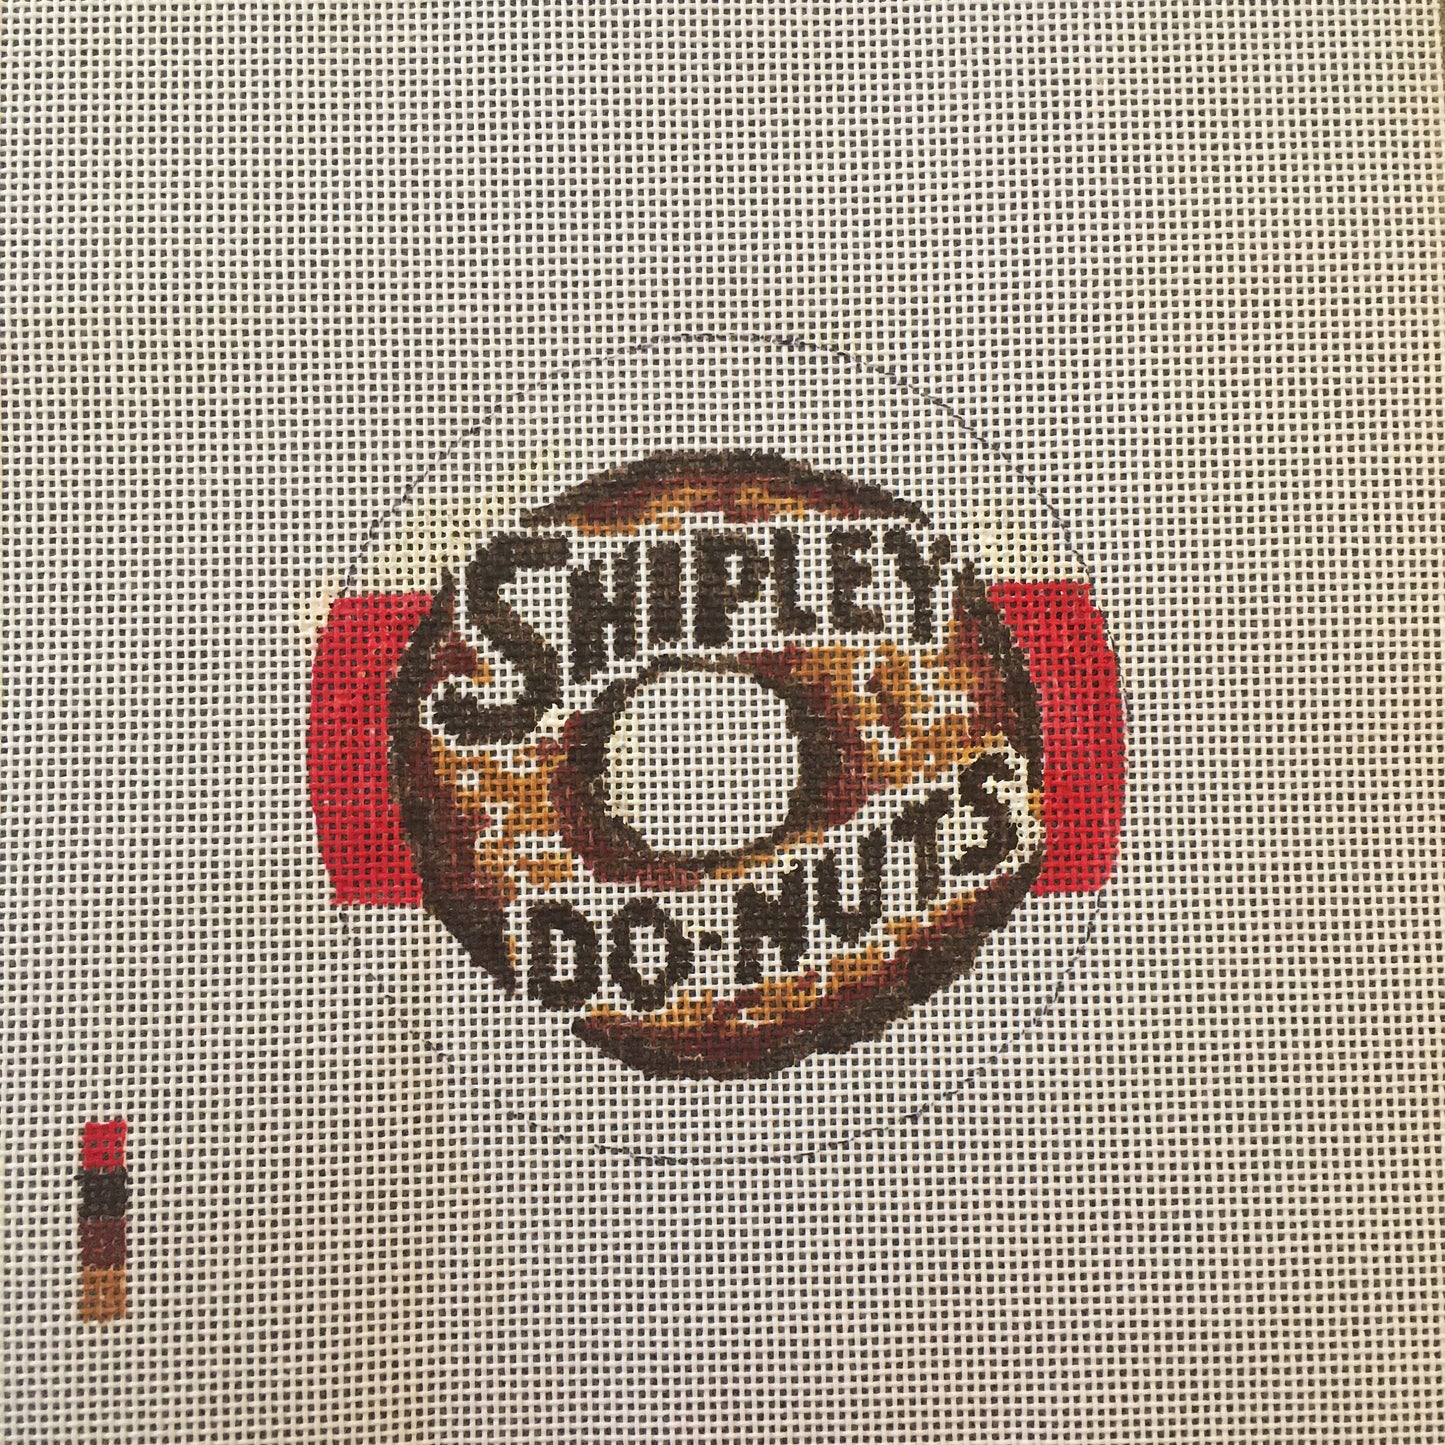 Shipley Do-nuts Sign